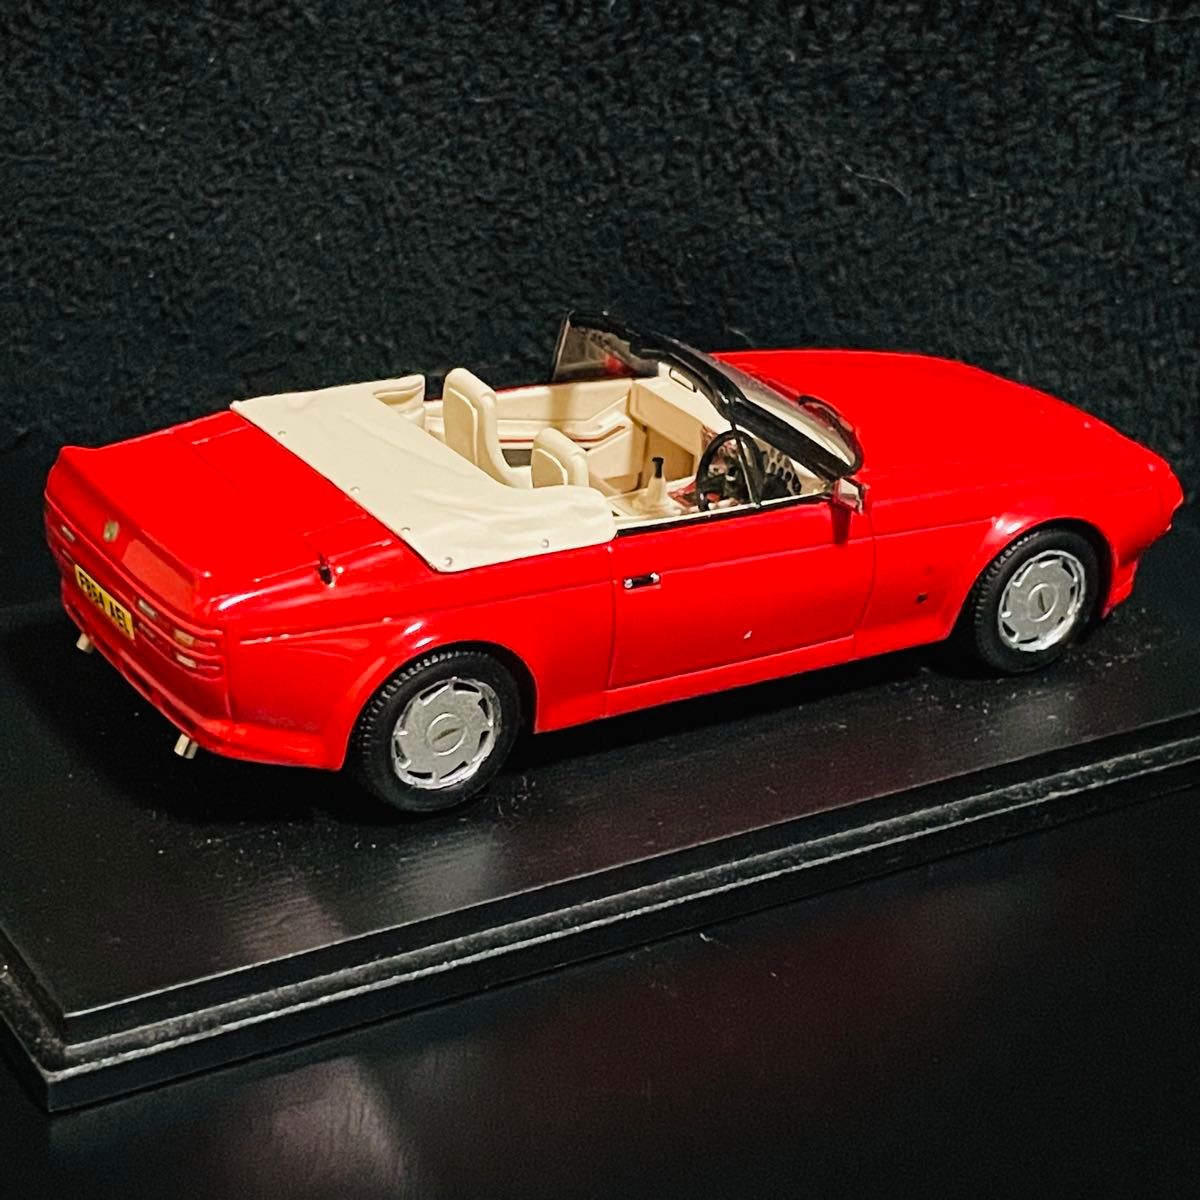 1/43 Spark アストンマーティン V8 ザガート ヴォランテ 1987